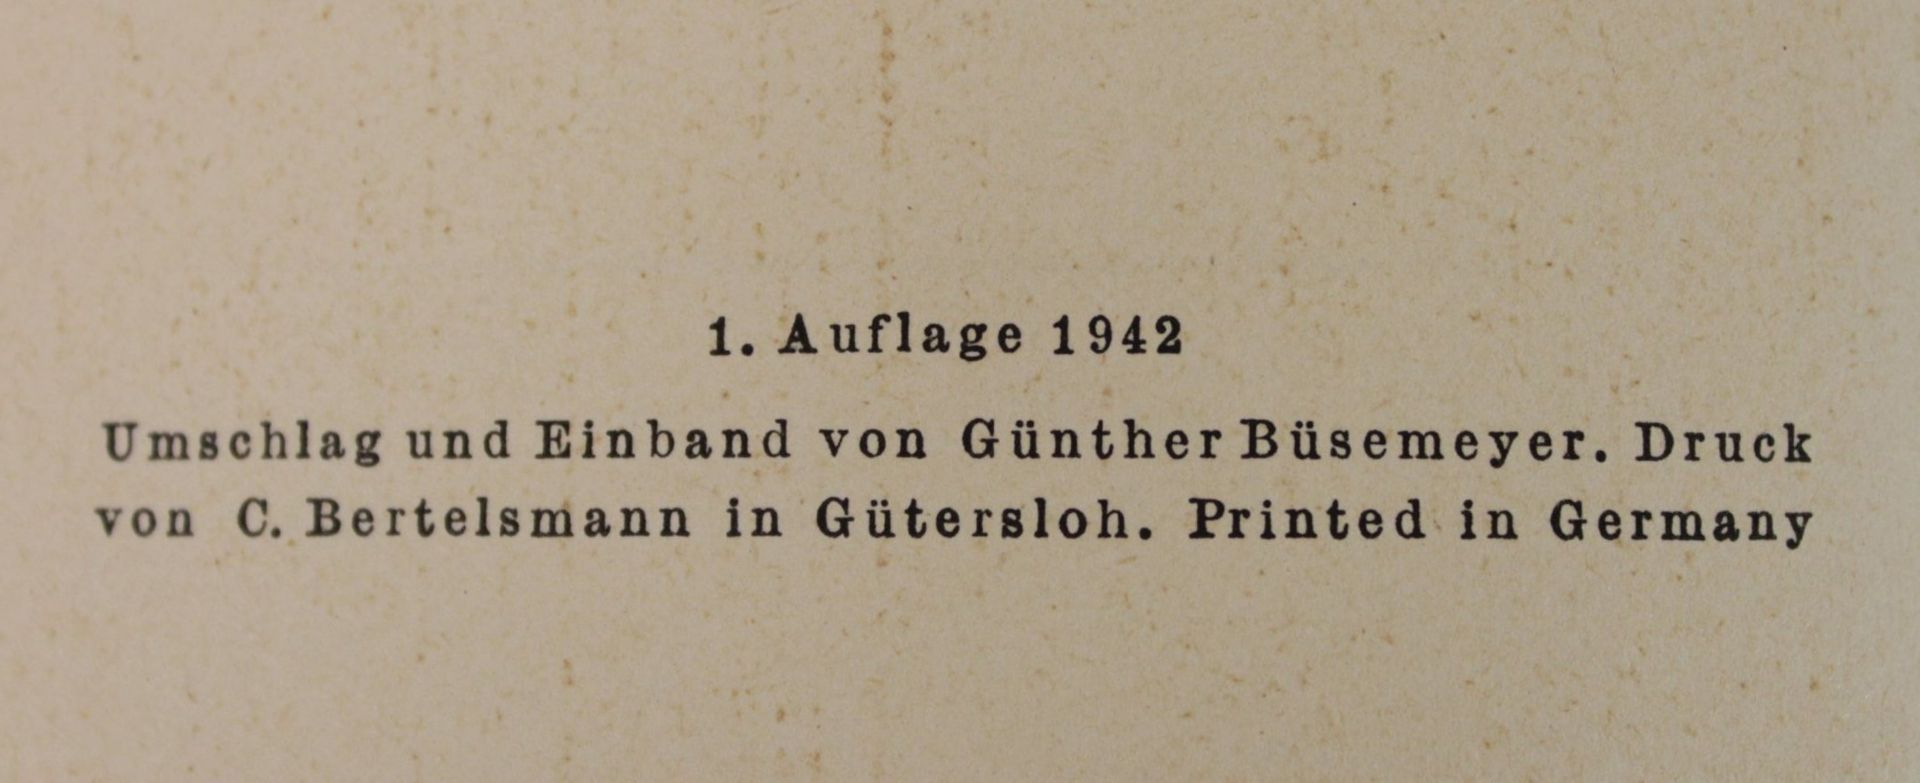 Tag und Nacht am Feind - Aufklärungs-Abteilungen im Westen, 1. Auflage 1942. - Image 2 of 5